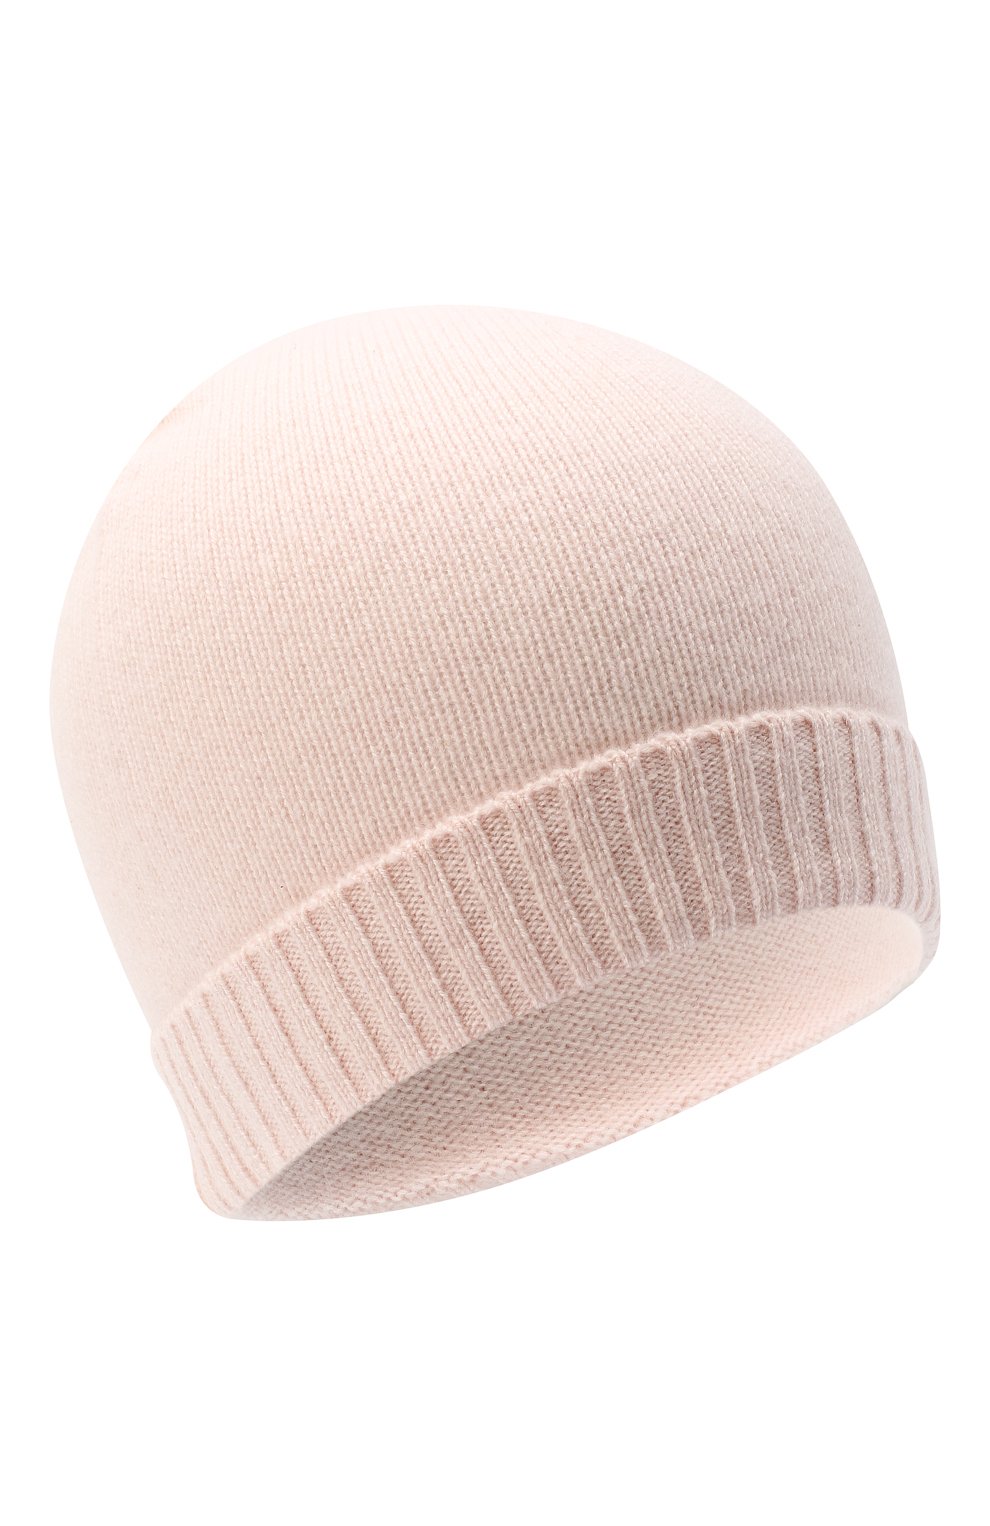 Детского кашемировая шапка OSCAR ET VALENTINE розового цвета, арт. BON02 | Фото 1 (Материал: Текстиль, Кашемир, Шерсть)